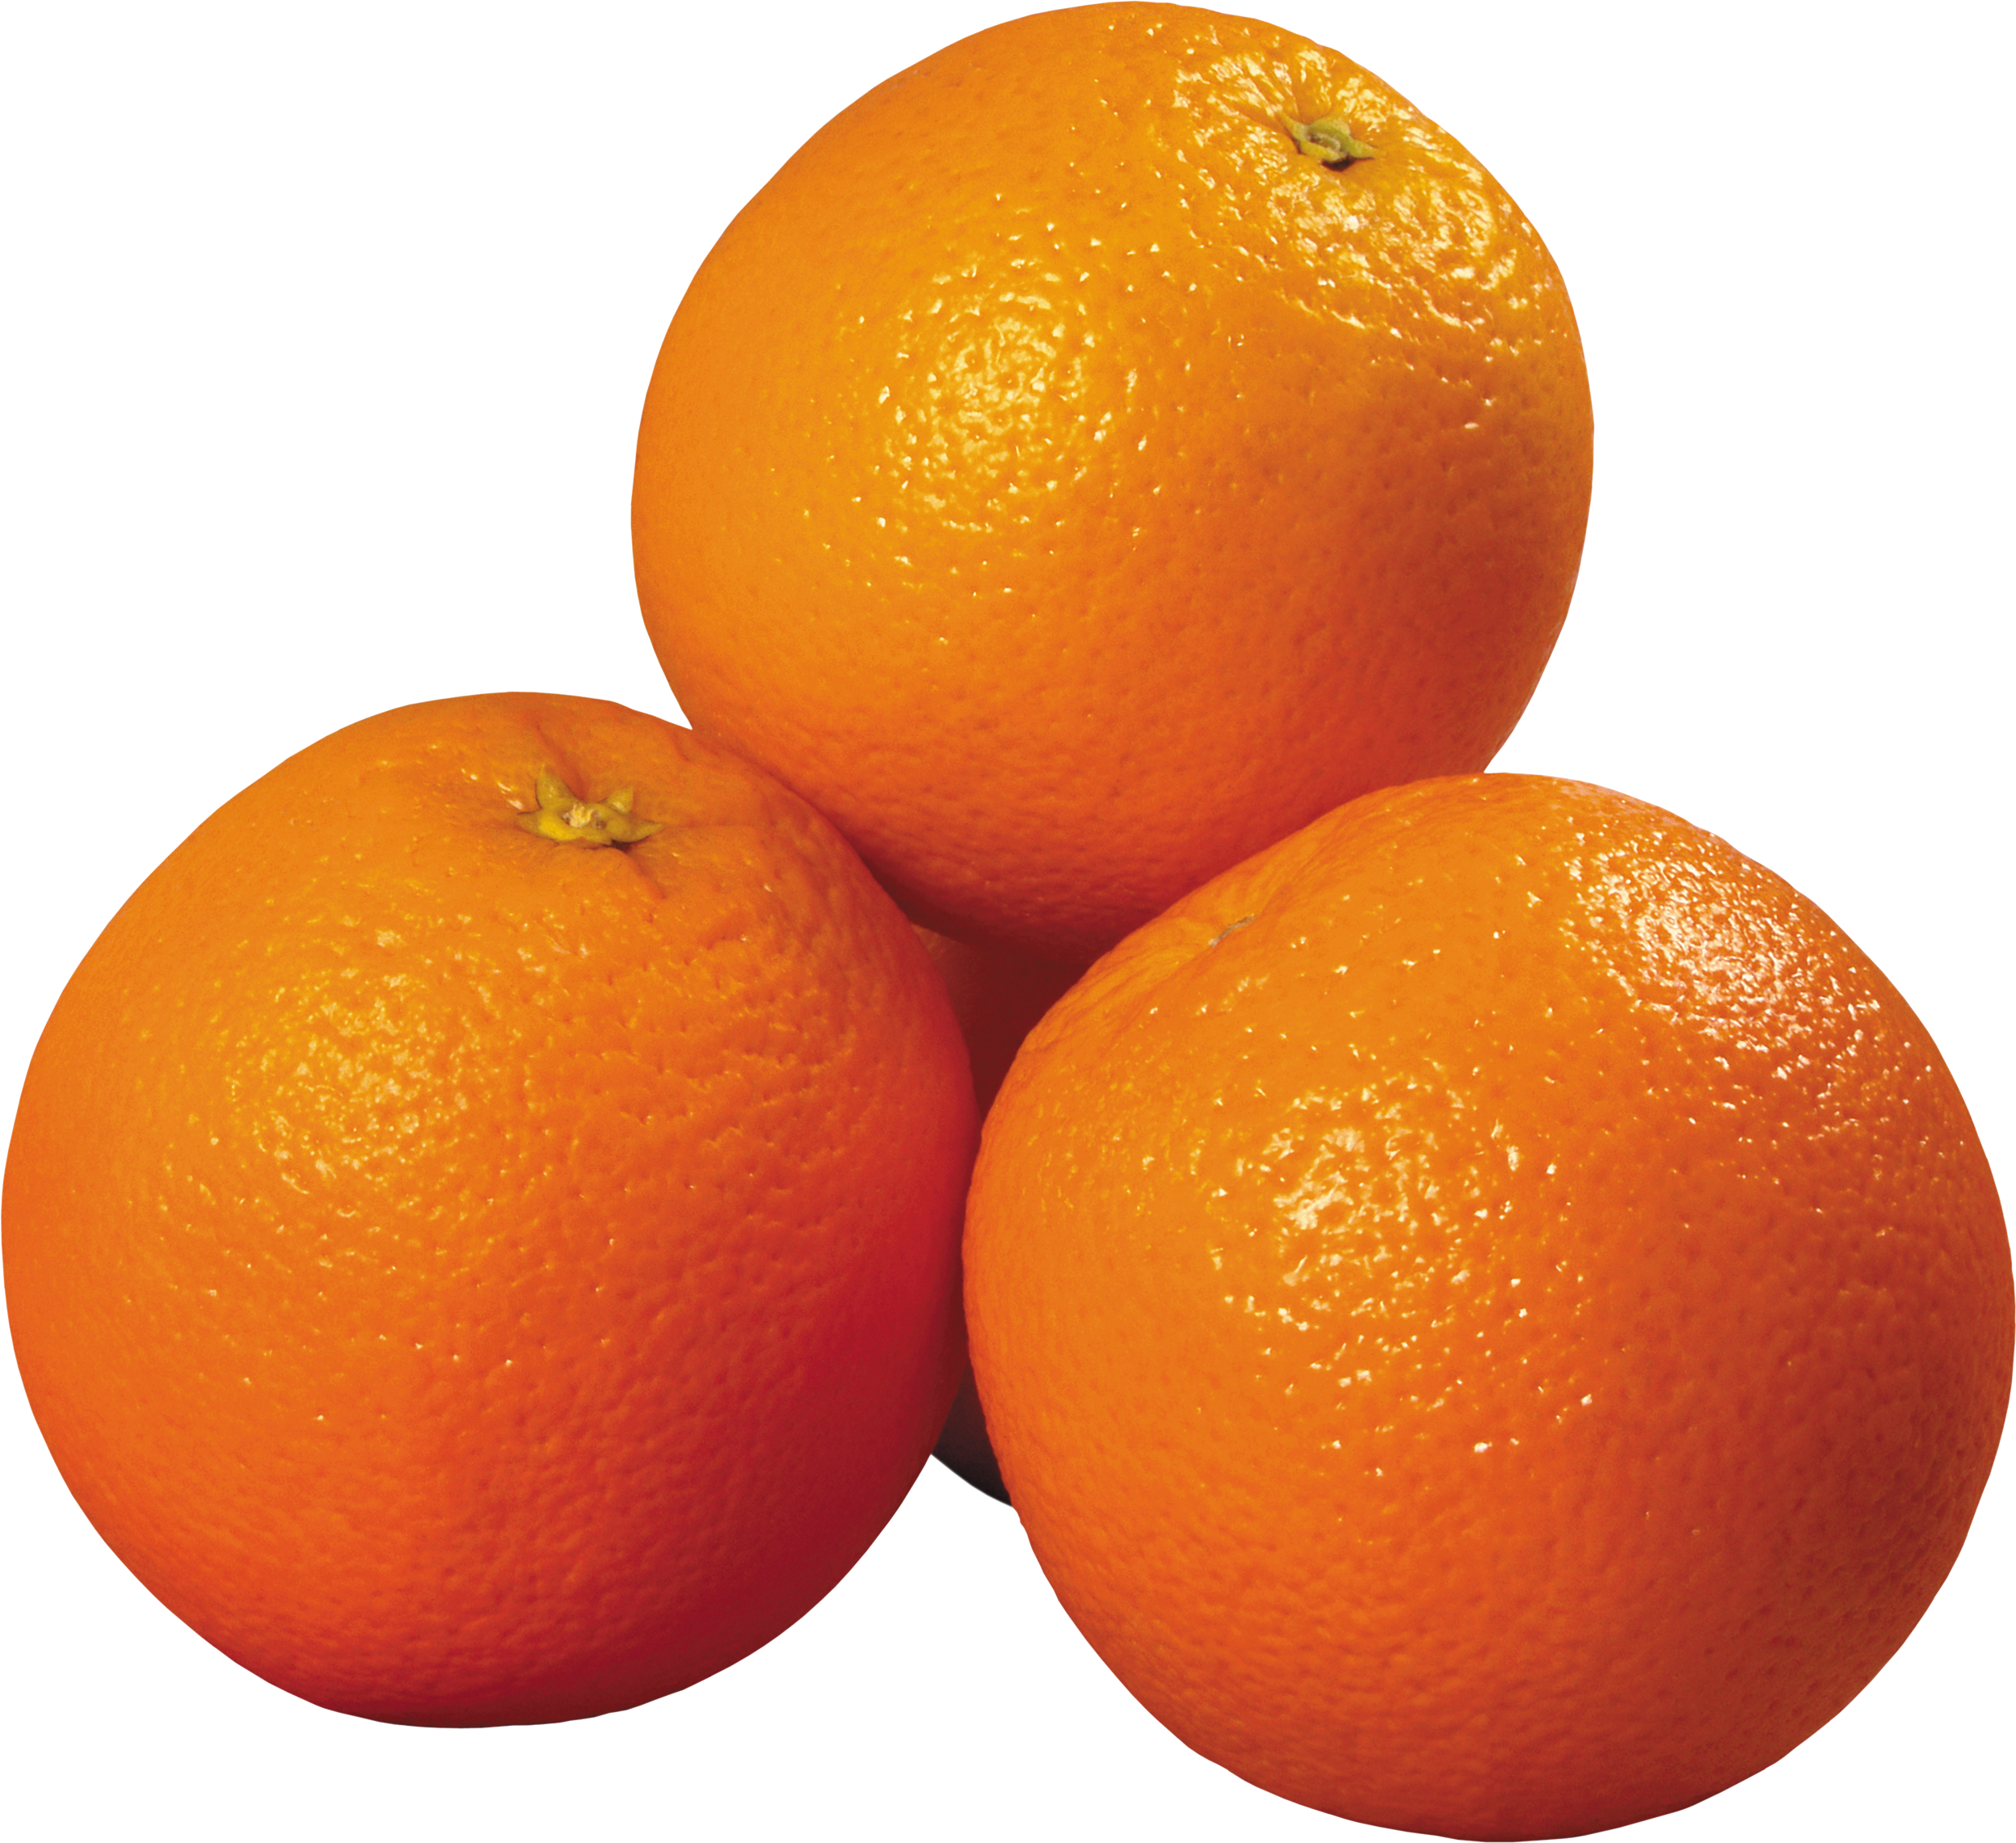 Oranges Transparent Images